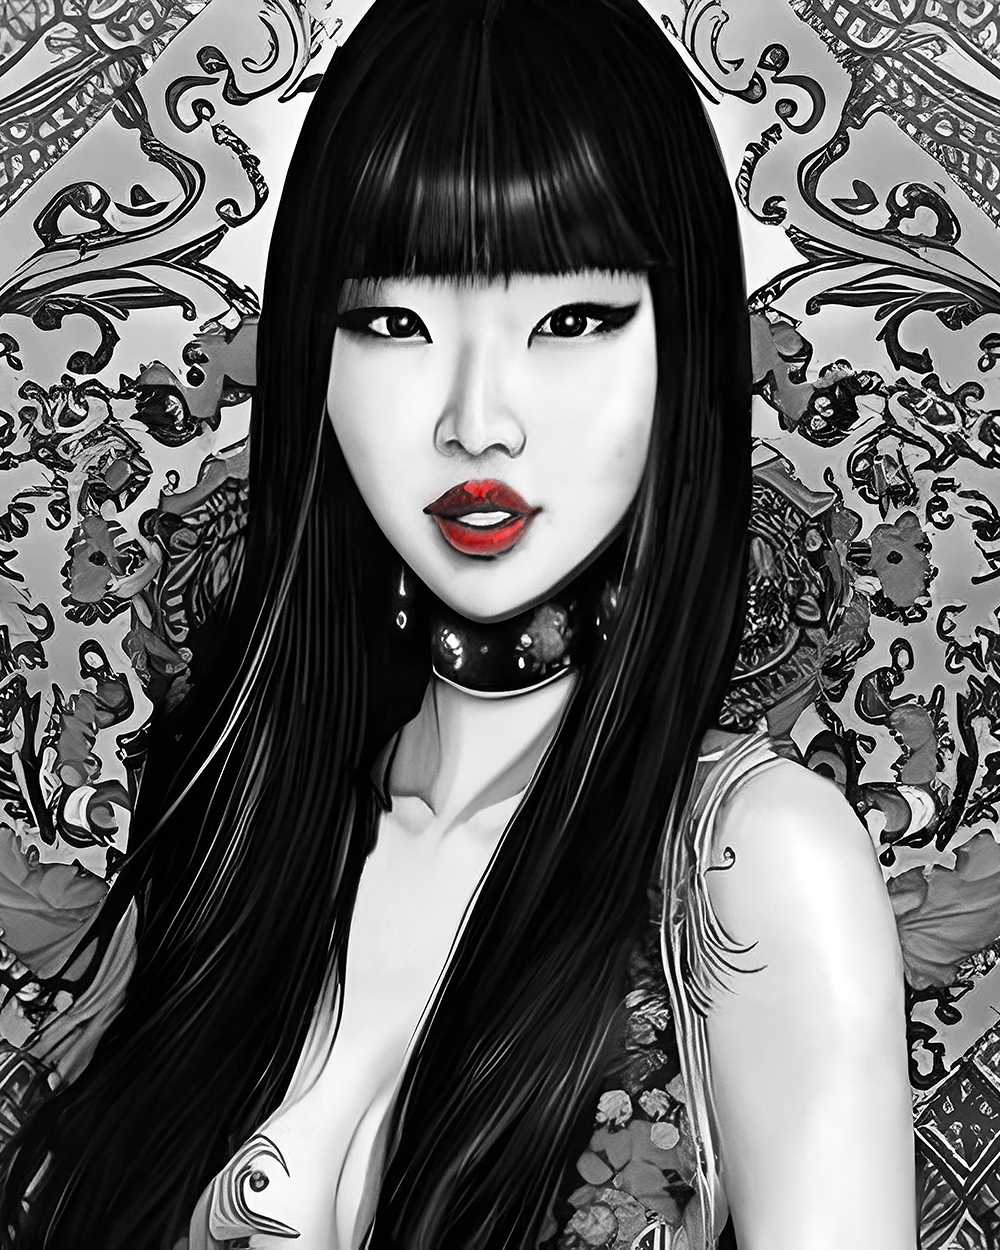 Asian Beauty 2 Digital Art red lips